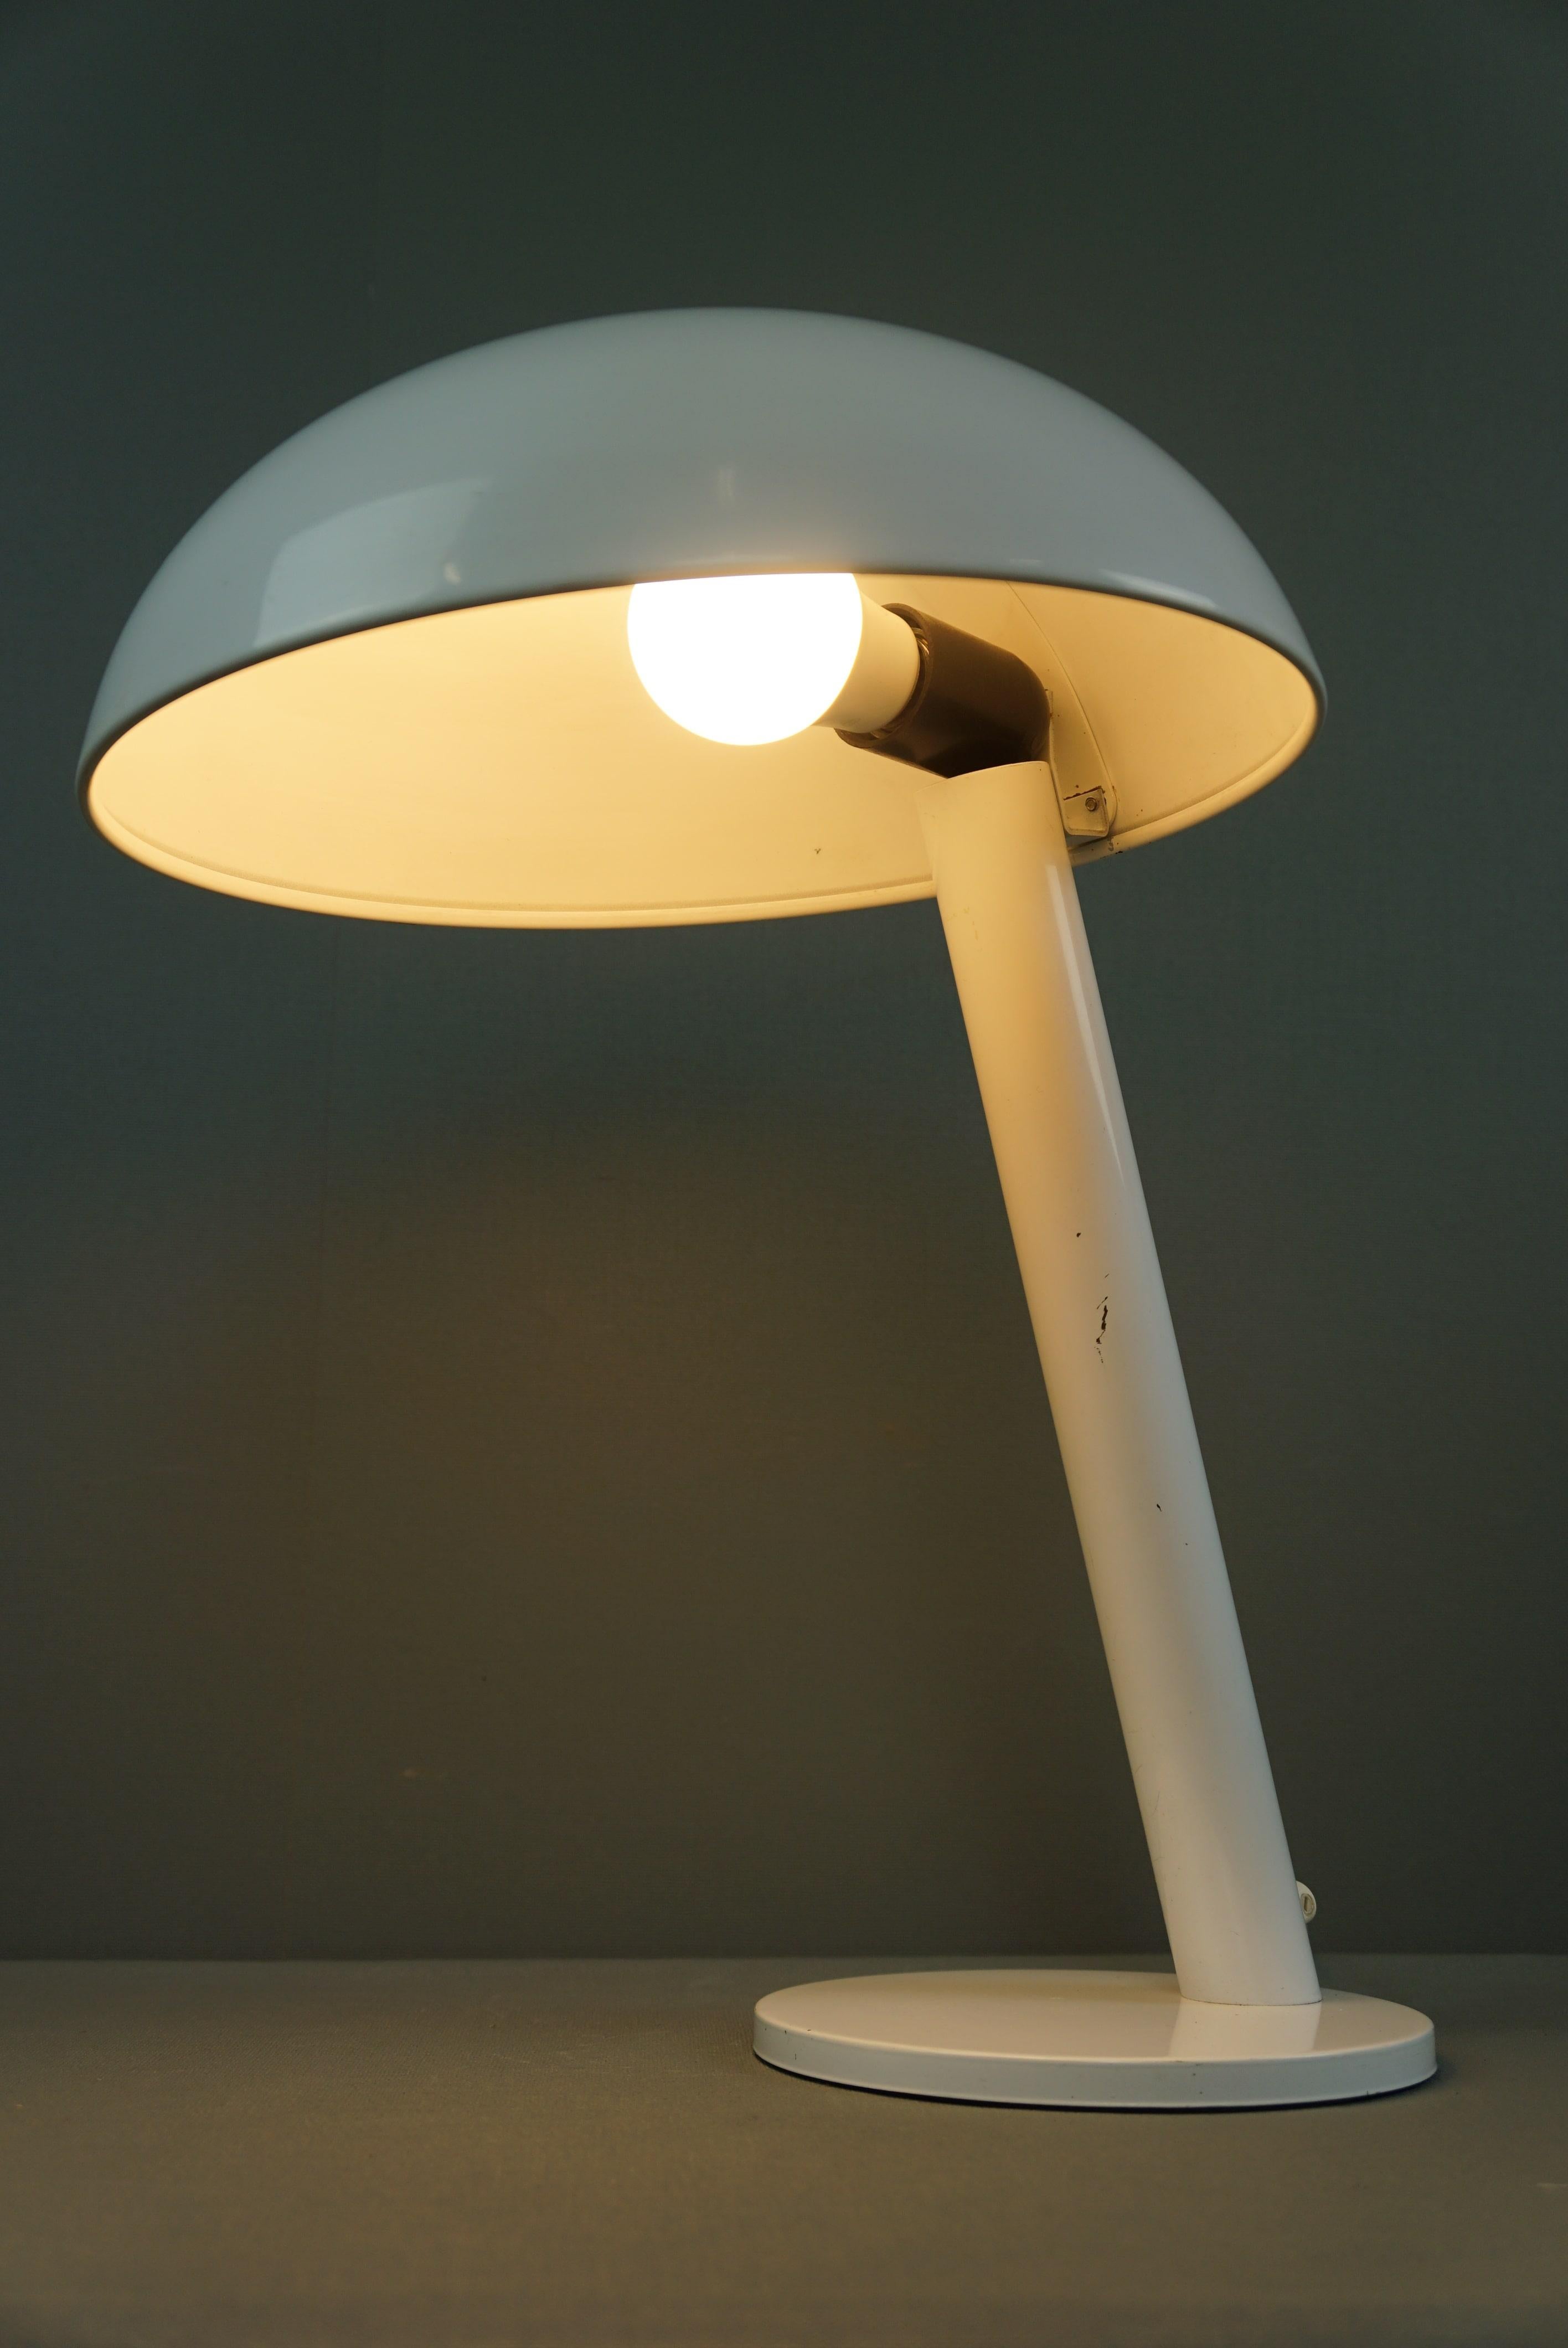 Angeboten wird diese Vintage-Lampe der niederländischen Firma Hala Zeist aus den 1960er Jahren.

Dieser Vintage-Klassiker hat einen eleganten und zeitgemäßen Look und wirkt durch die weiße Farbe und das Design auch sehr modern.
In Anbetracht ihres